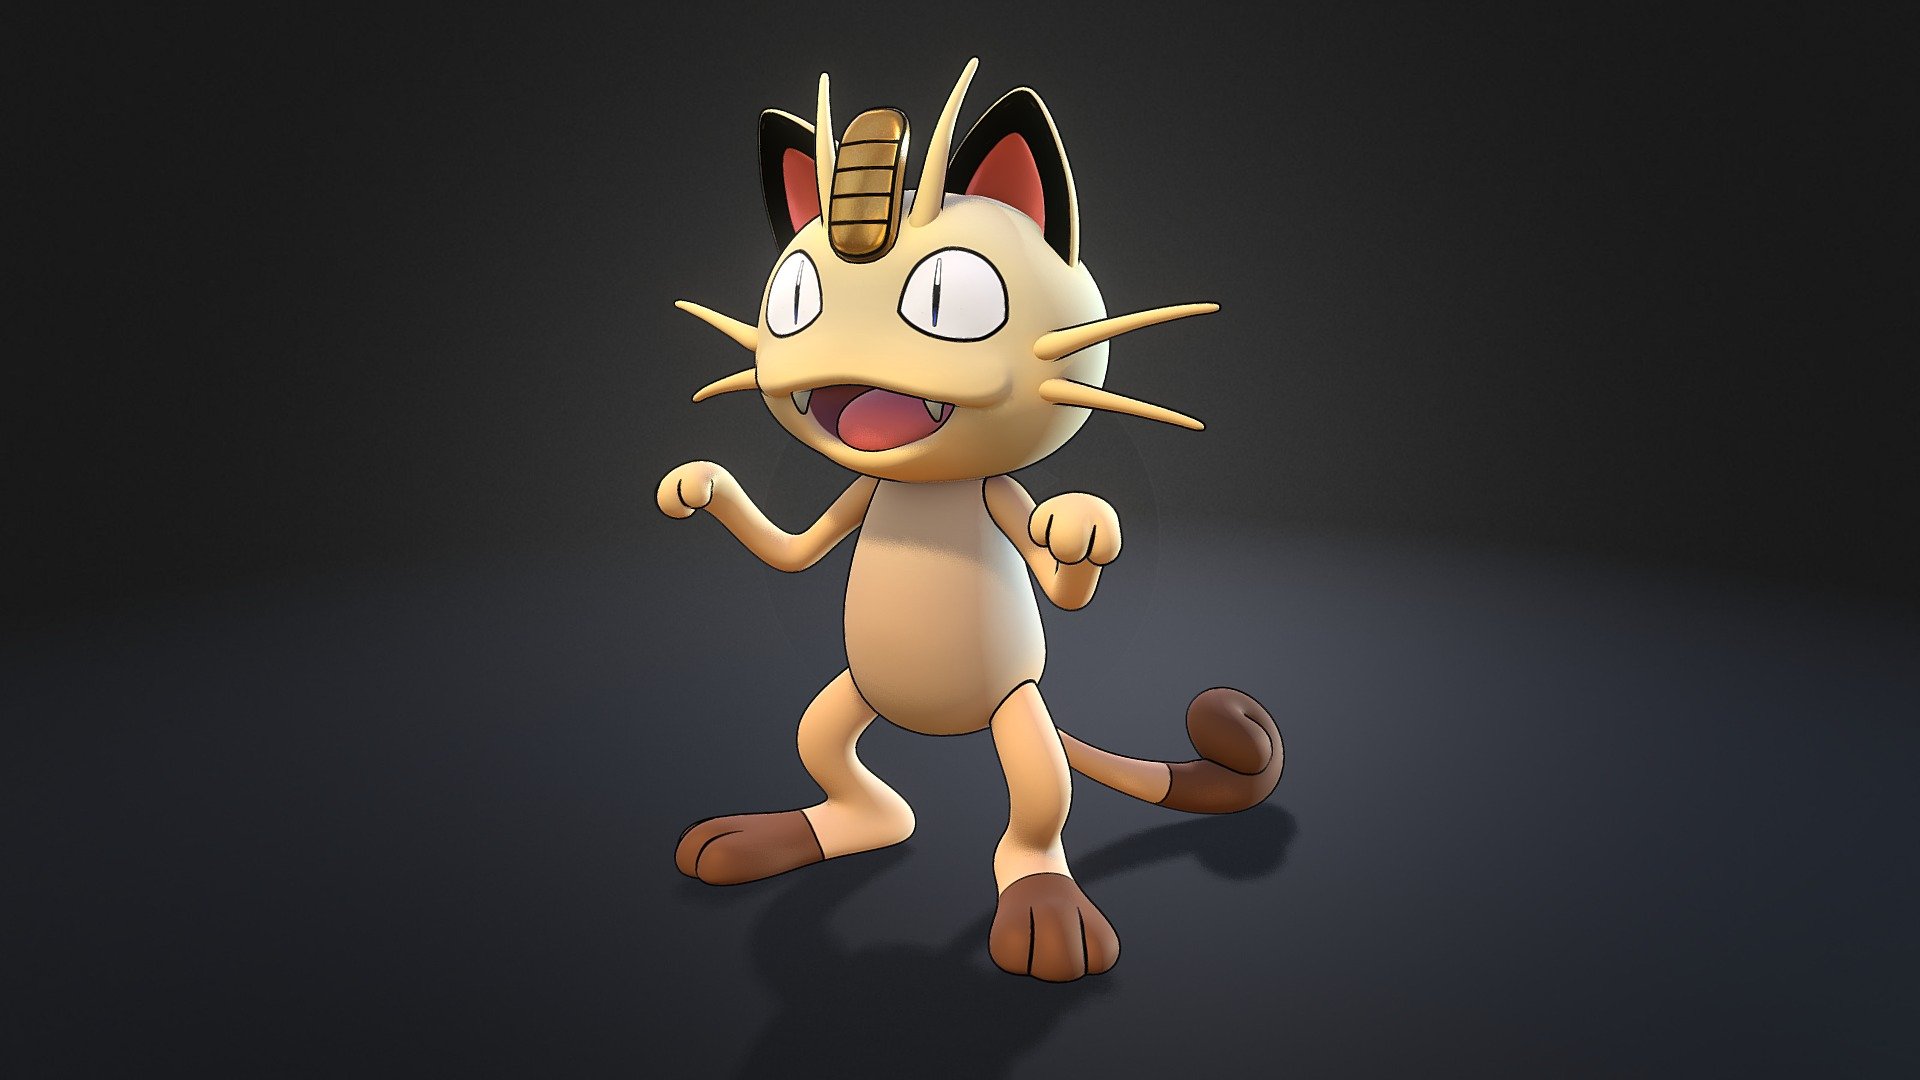 Meowth Pokemon - 3D model by 3dlogicus.